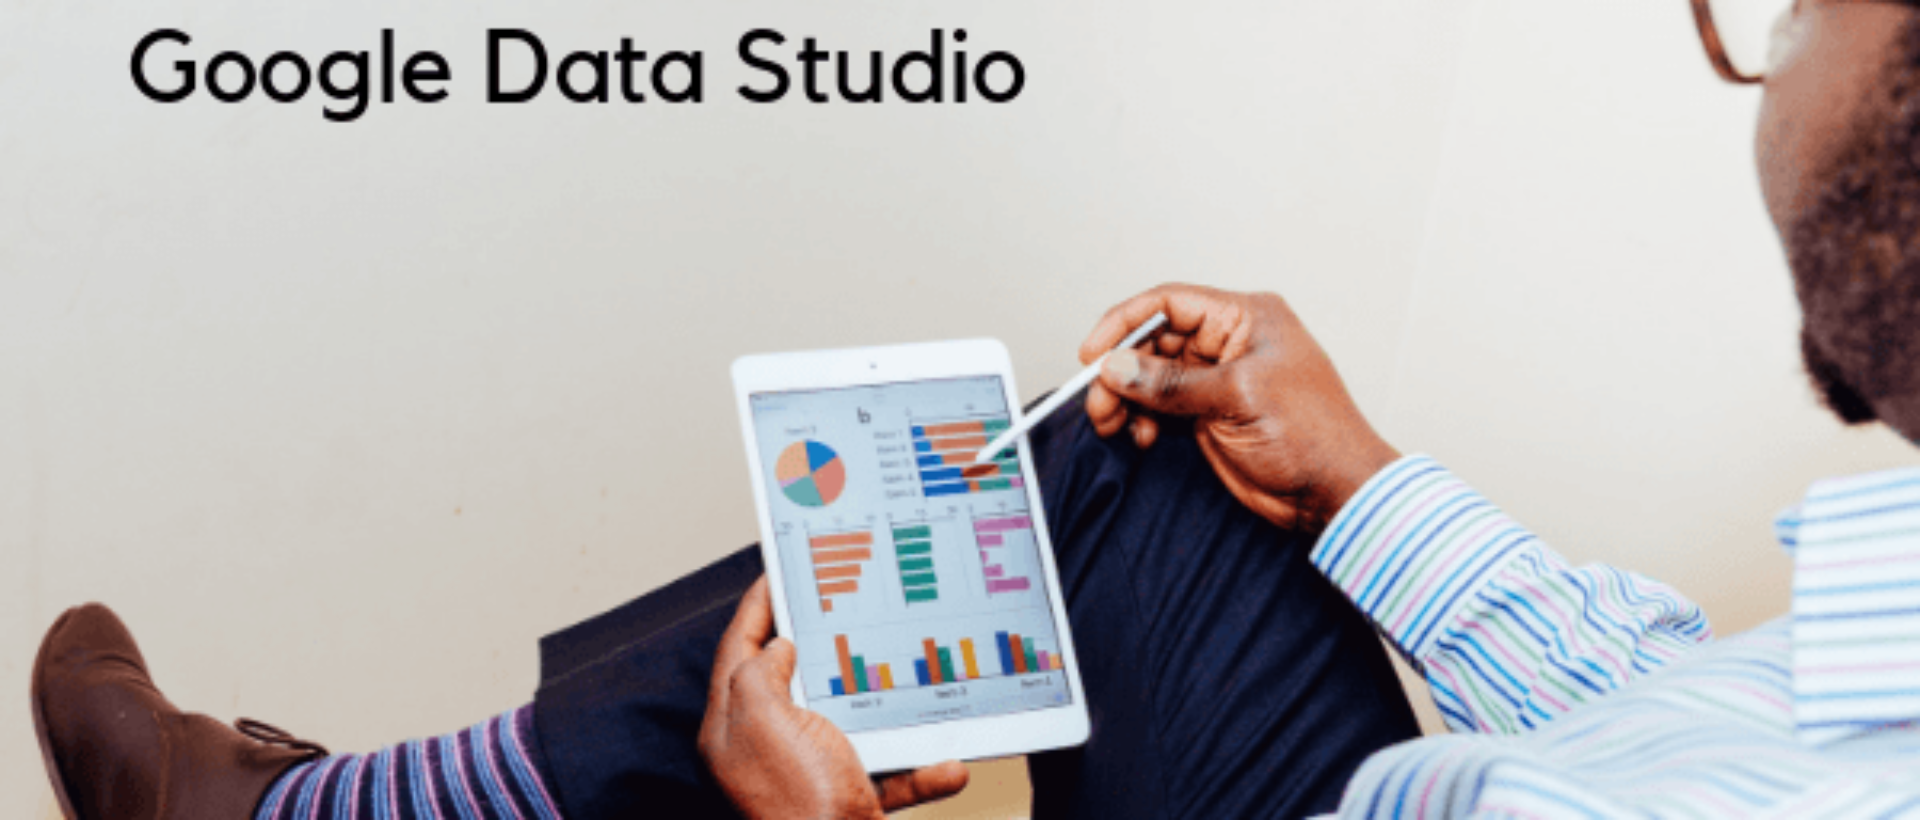 Google Data Studio ist der Titel des Bildes. Ein Mann sitzt und schaut sich ansprechend gestaltete Datenberichte an.